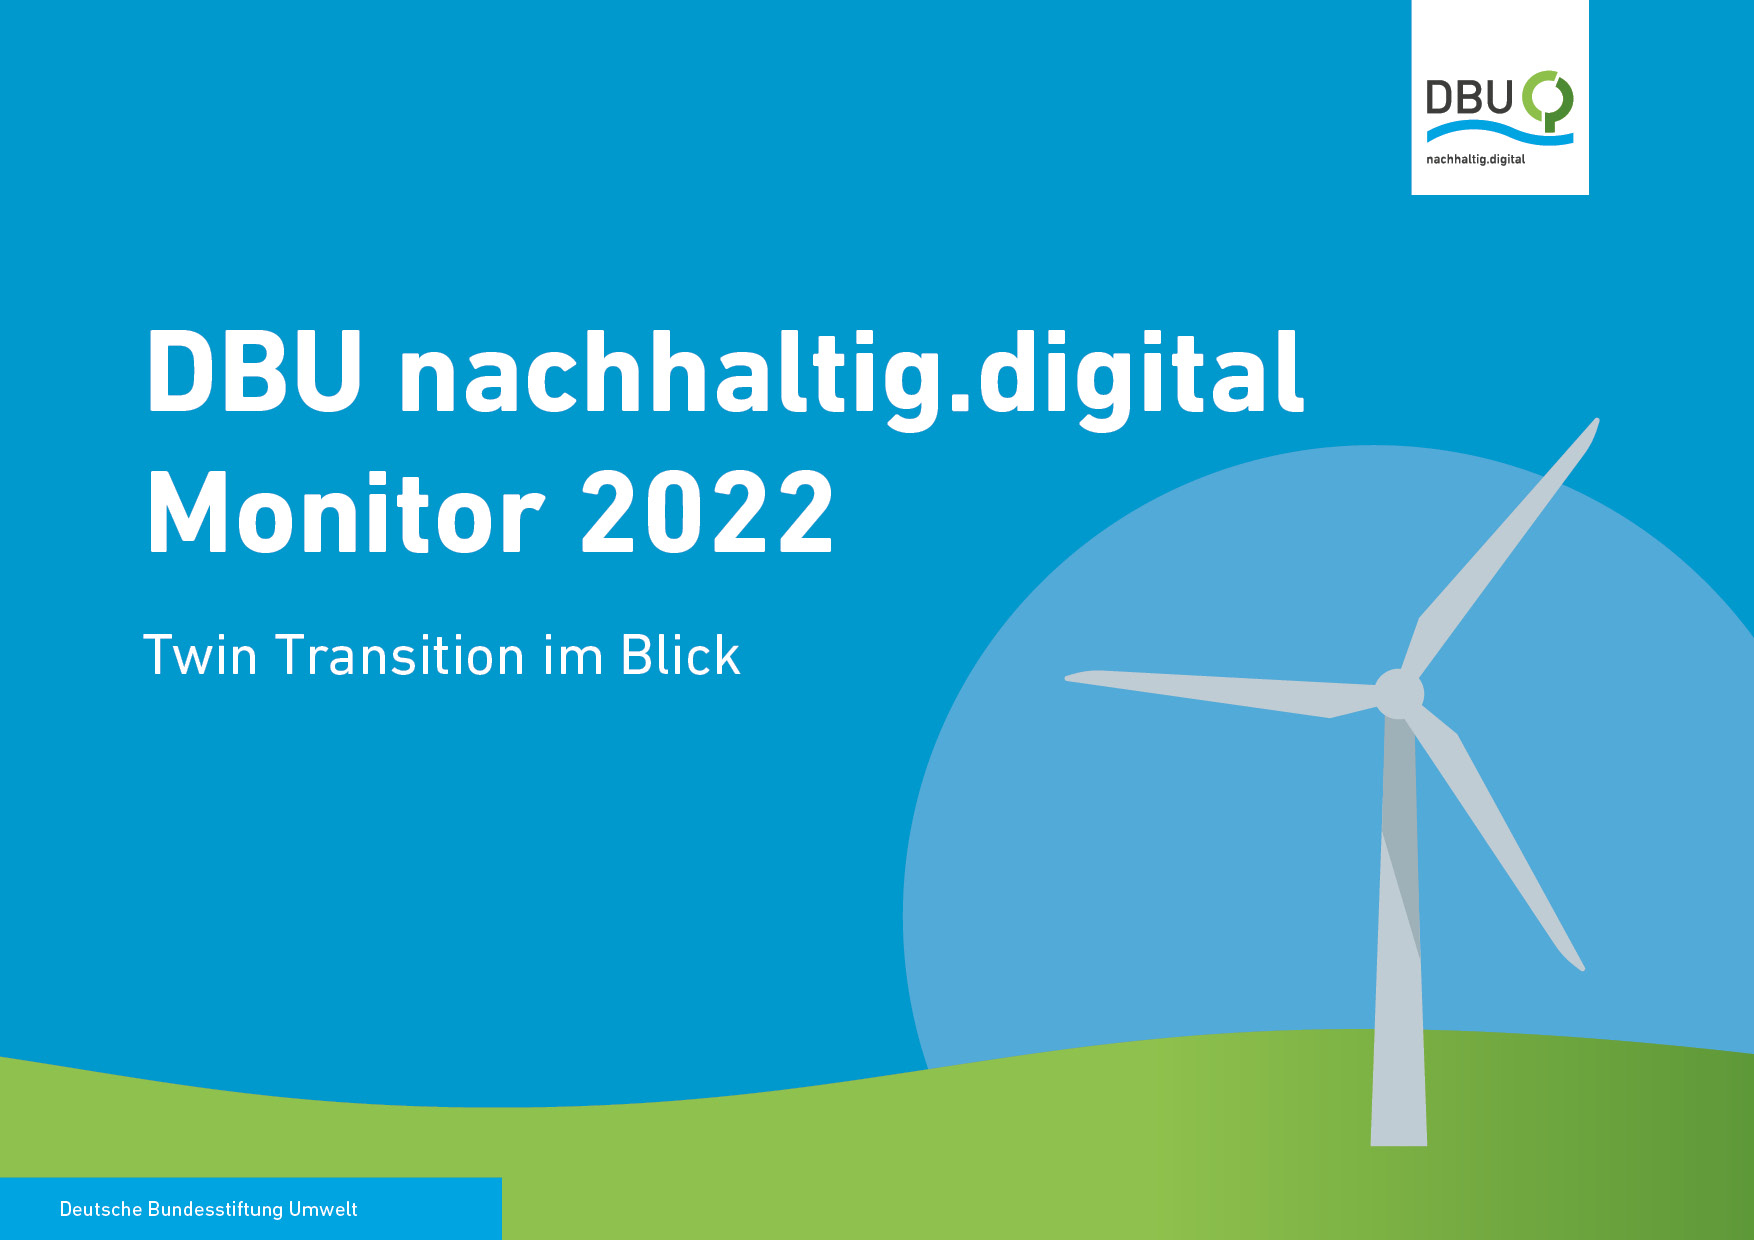 Der DBU nachhaltig.digital Monitor 2022 zeigt: Ein Großteil der befragten Unternehmen sieht keine Hemmnisse für eine nachhaltige Digitalisierung; allerdings hapert es oft noch an der praktischen Umsetzung. © Deutsche Bundesstiftung Umwelt